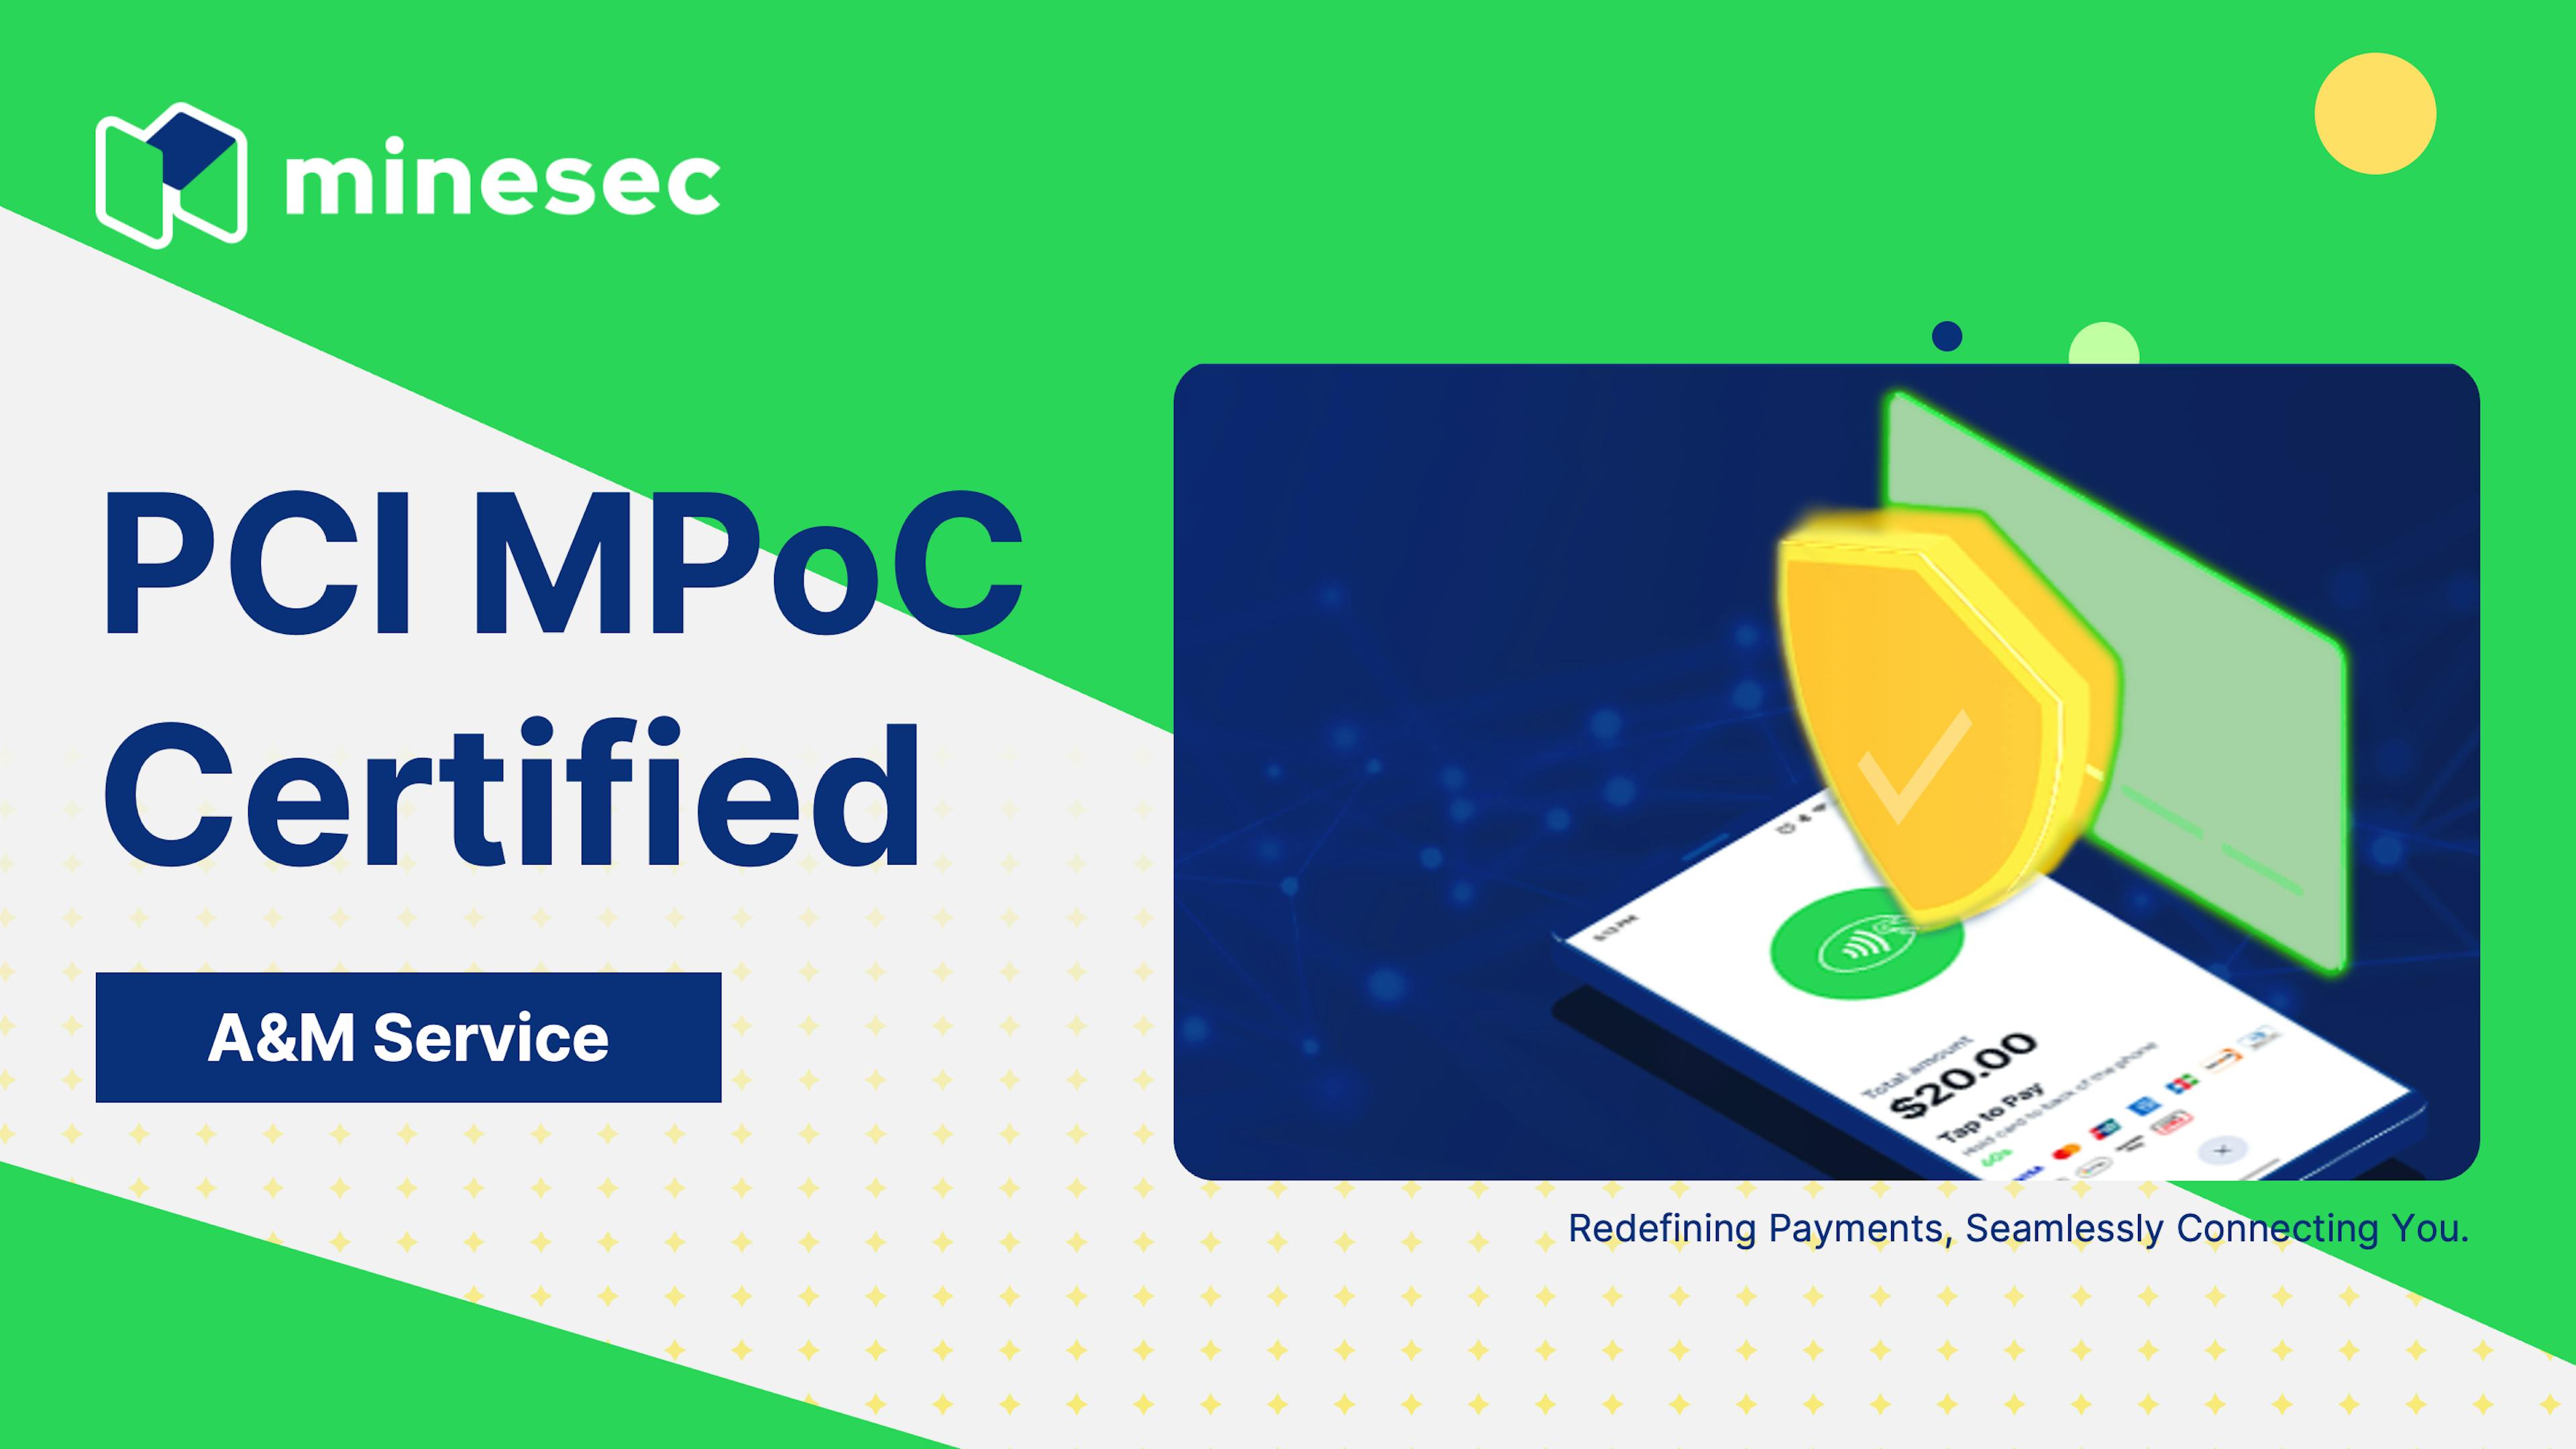 MineSec PCI MPoC certified A&M Service